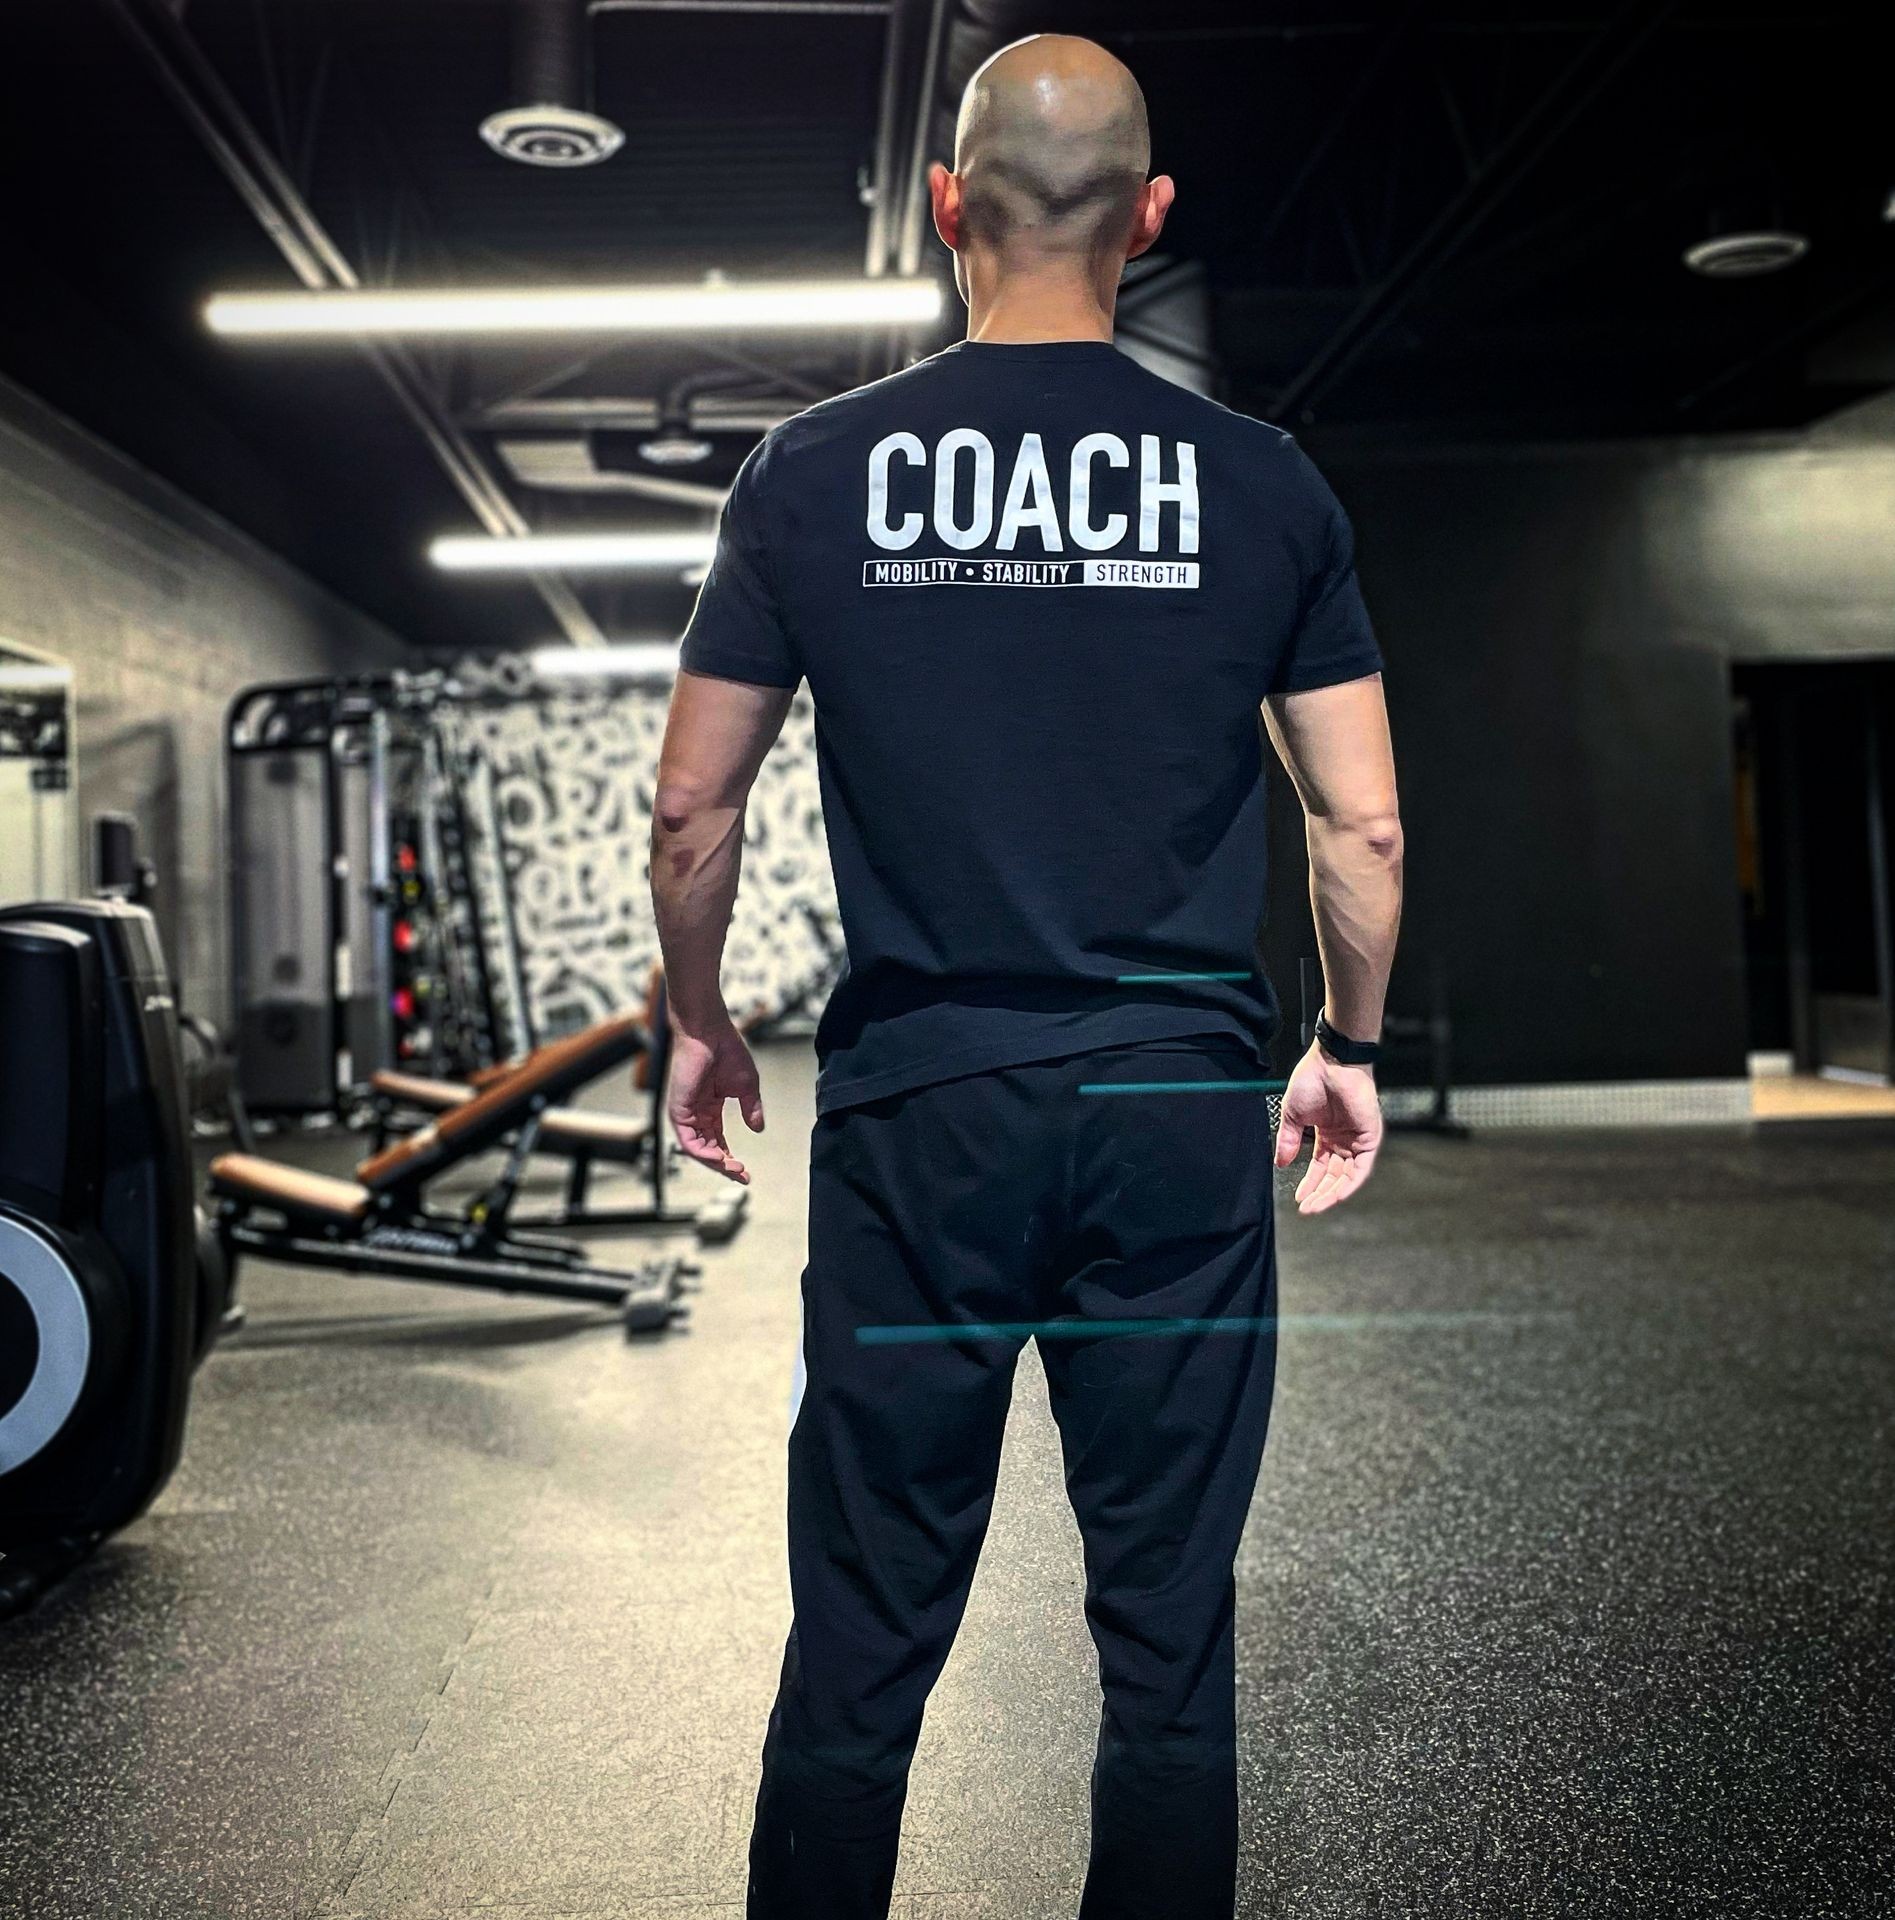 coach in a gym